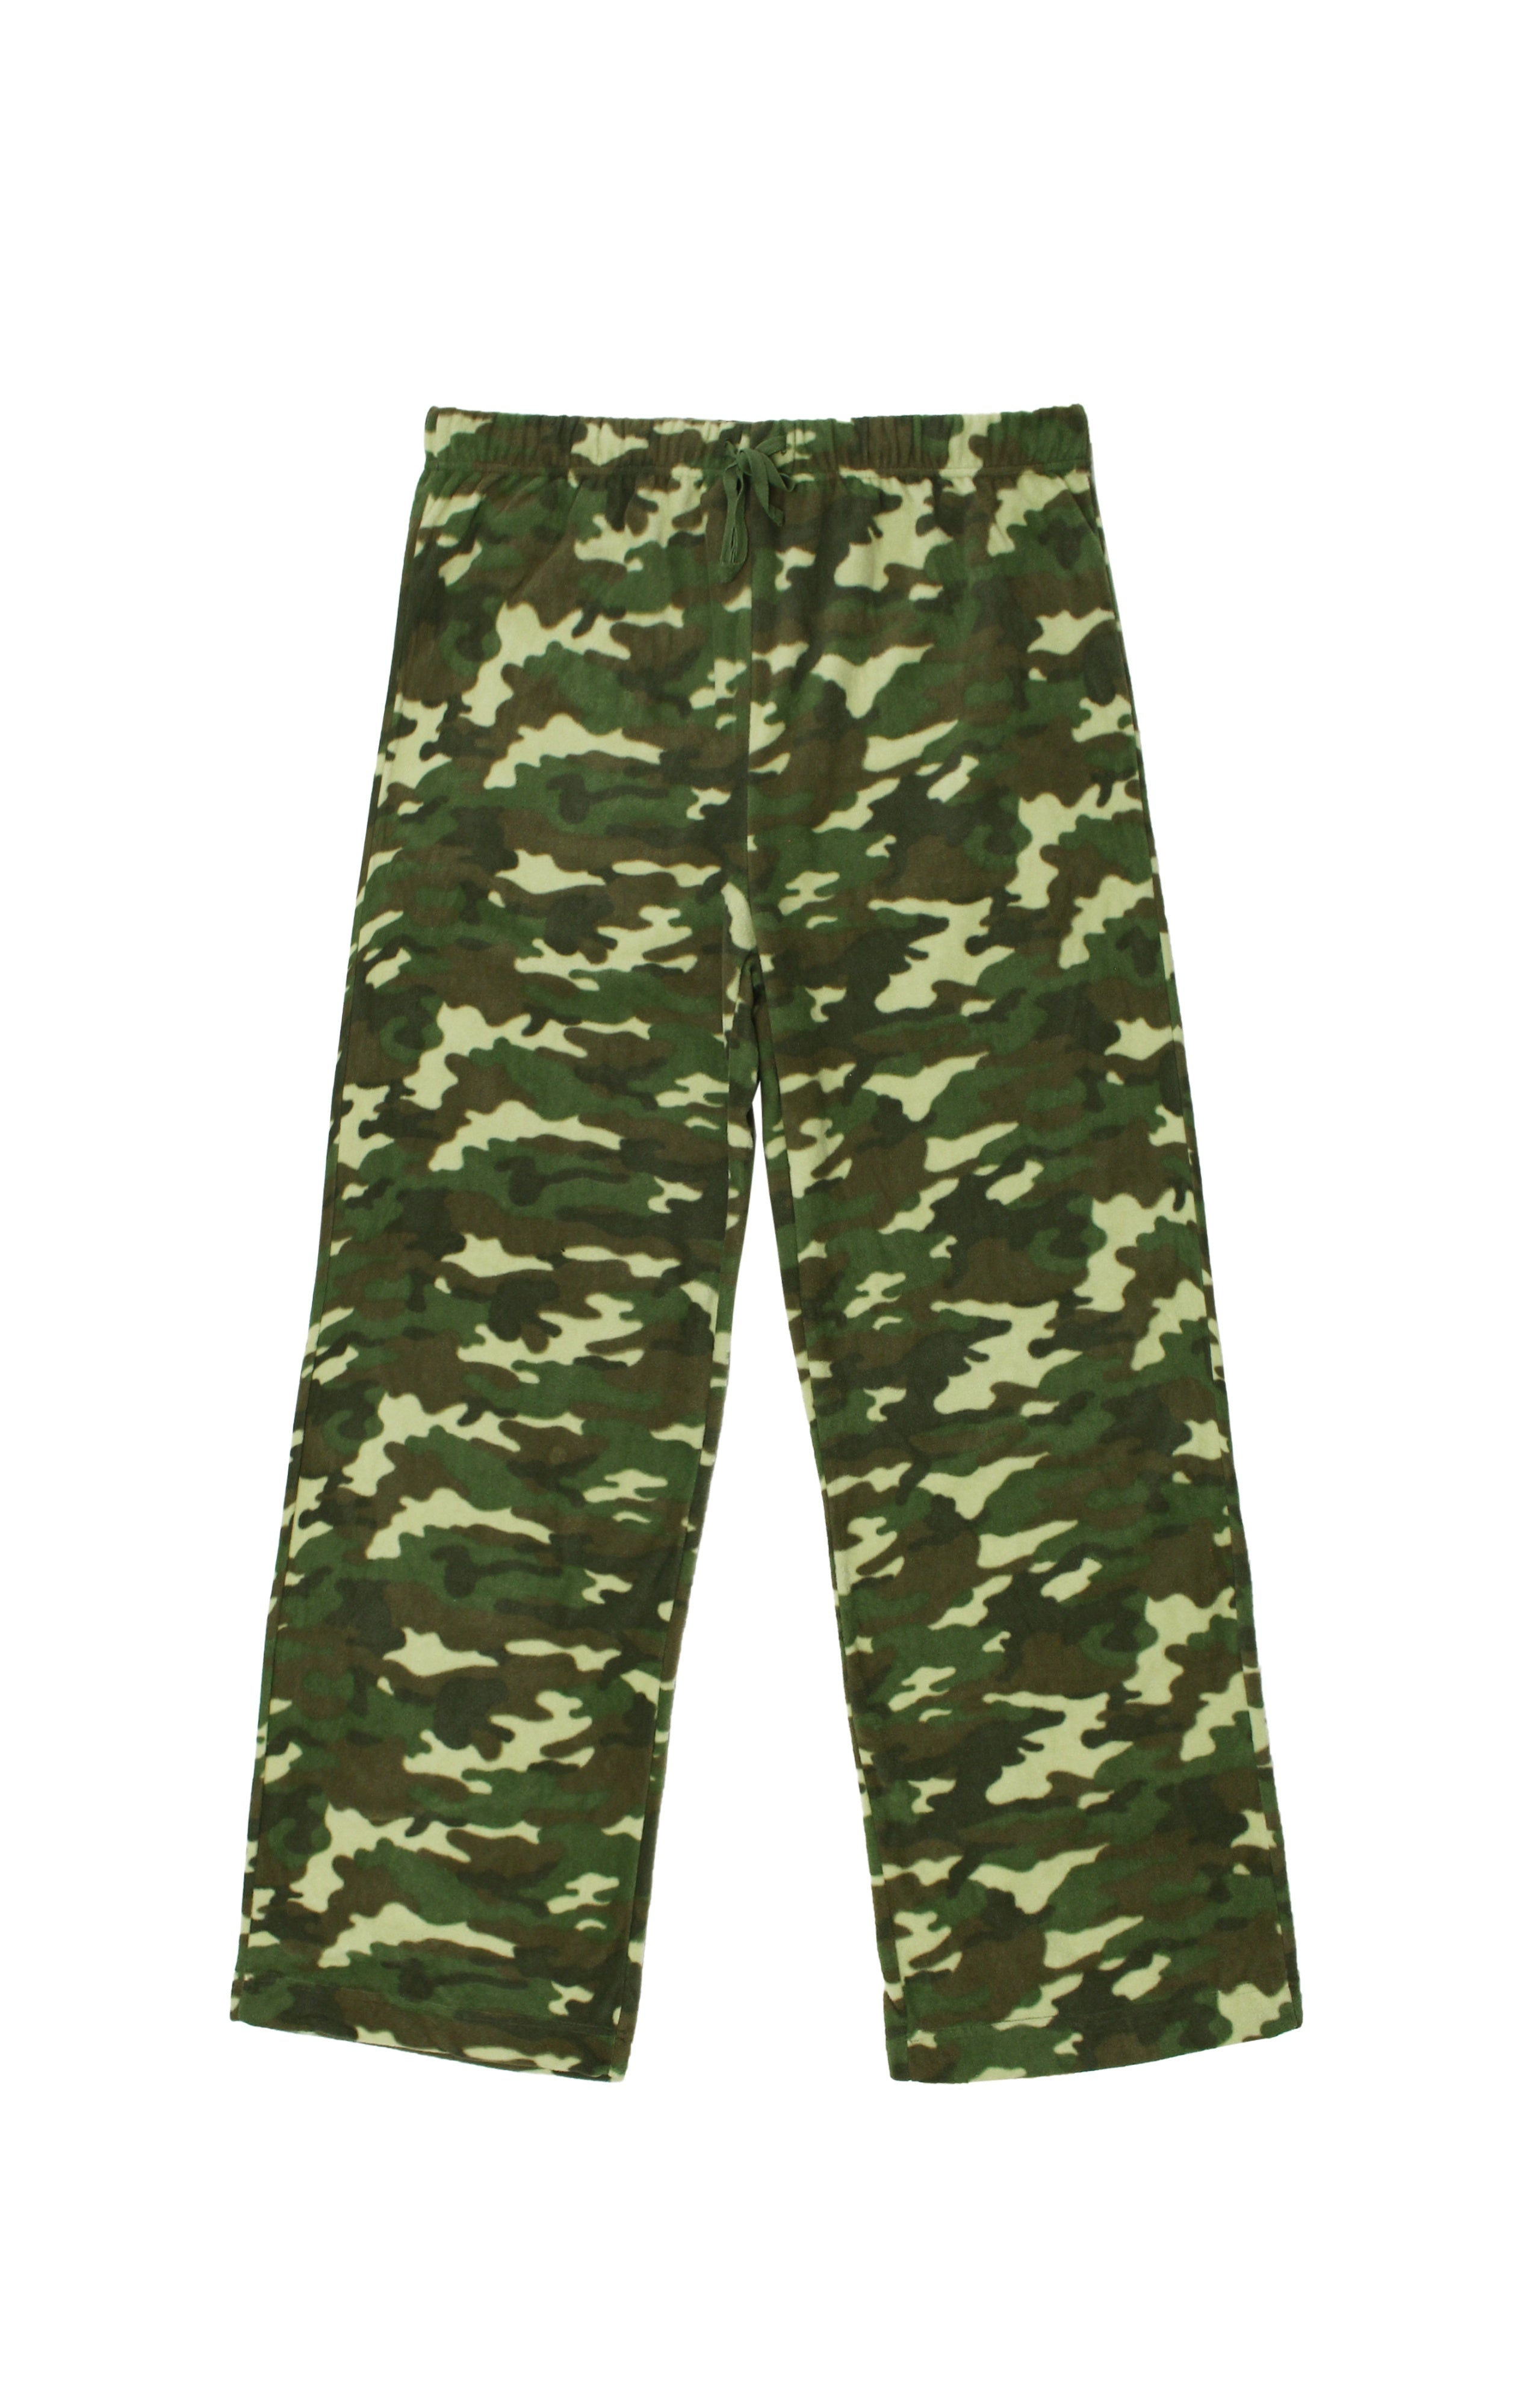 Men's Camouflage Fleece Pants